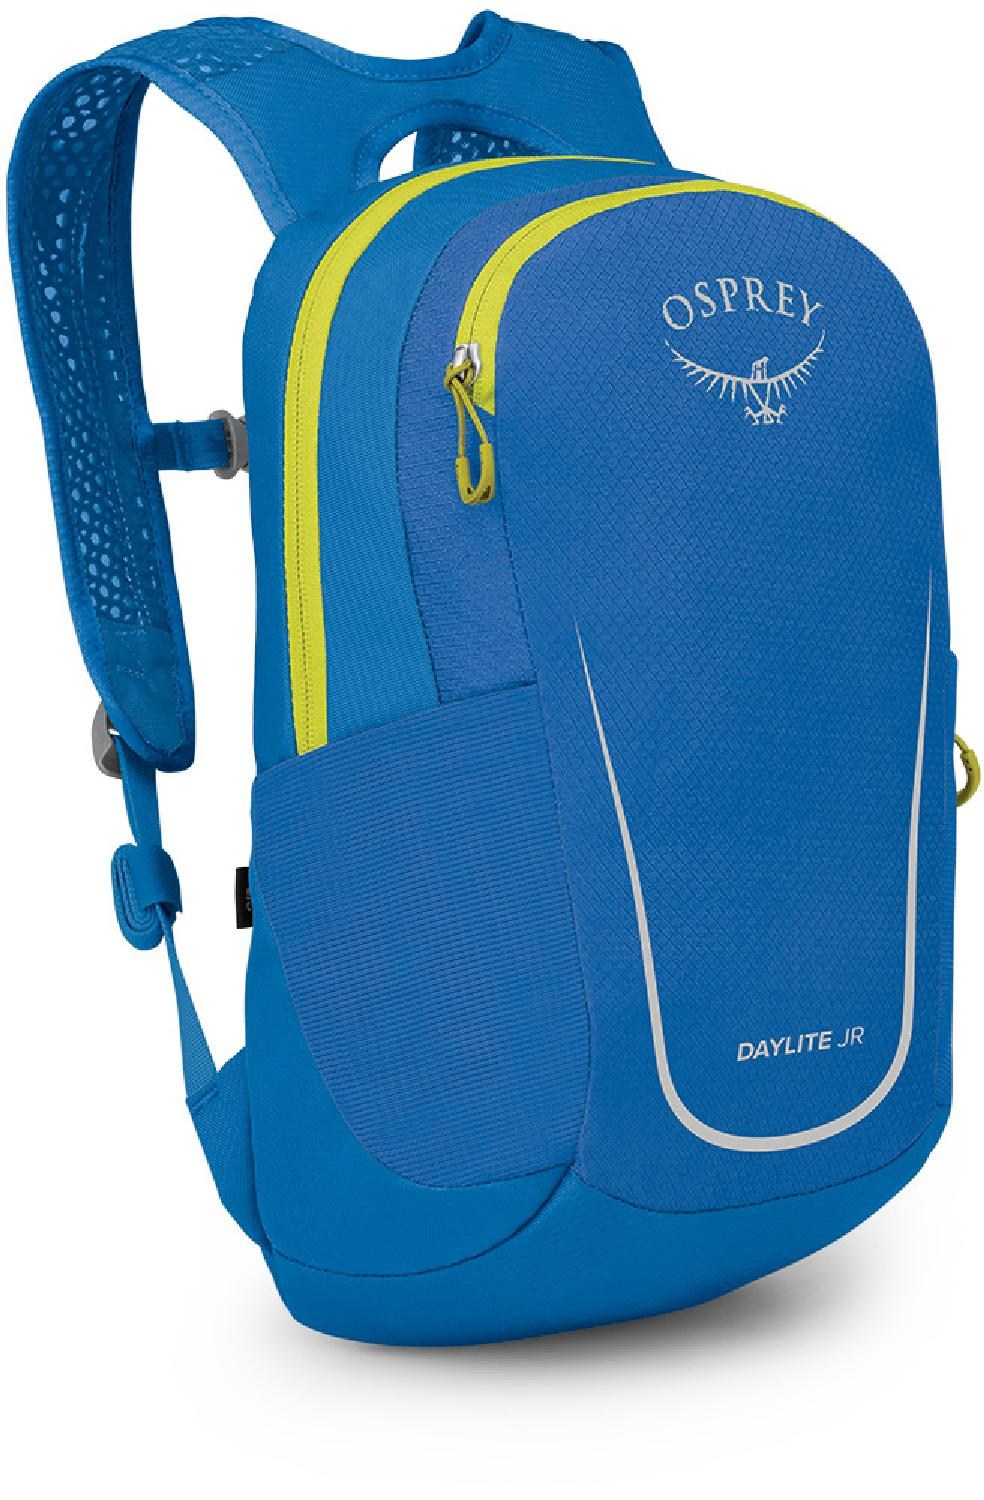 Пакет Daylite — детский Osprey, синий